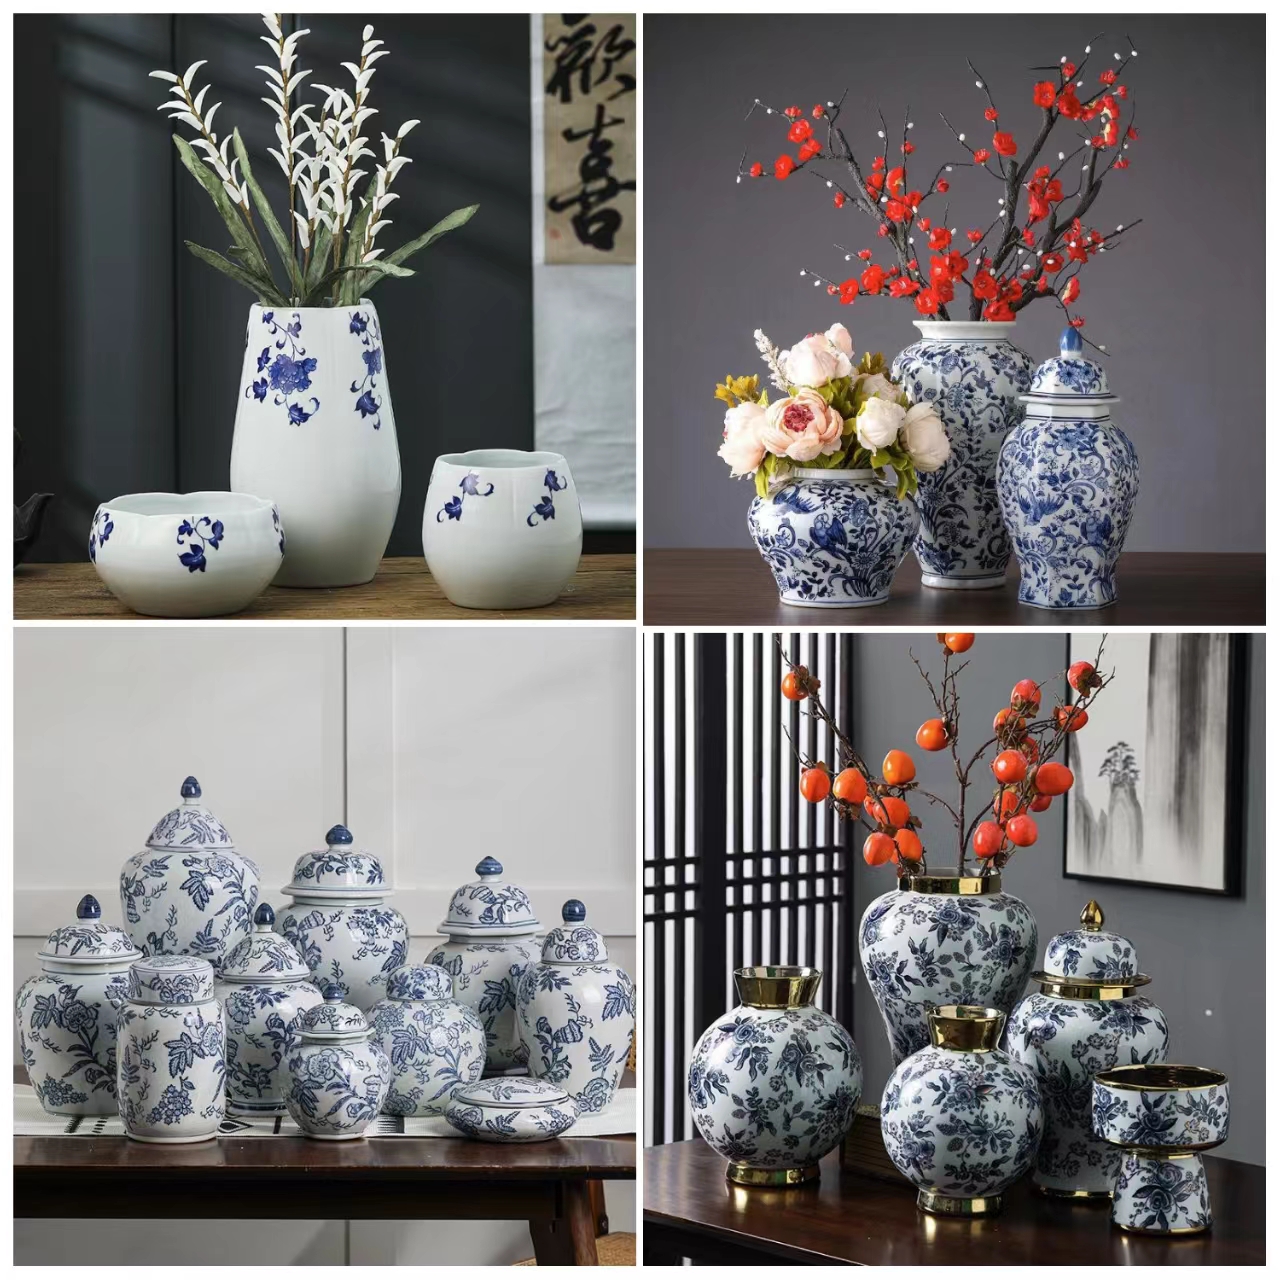 轻奢新中式家居客厅电视柜茶几玄关样板房手绘青花纹陶瓷花瓶摆件